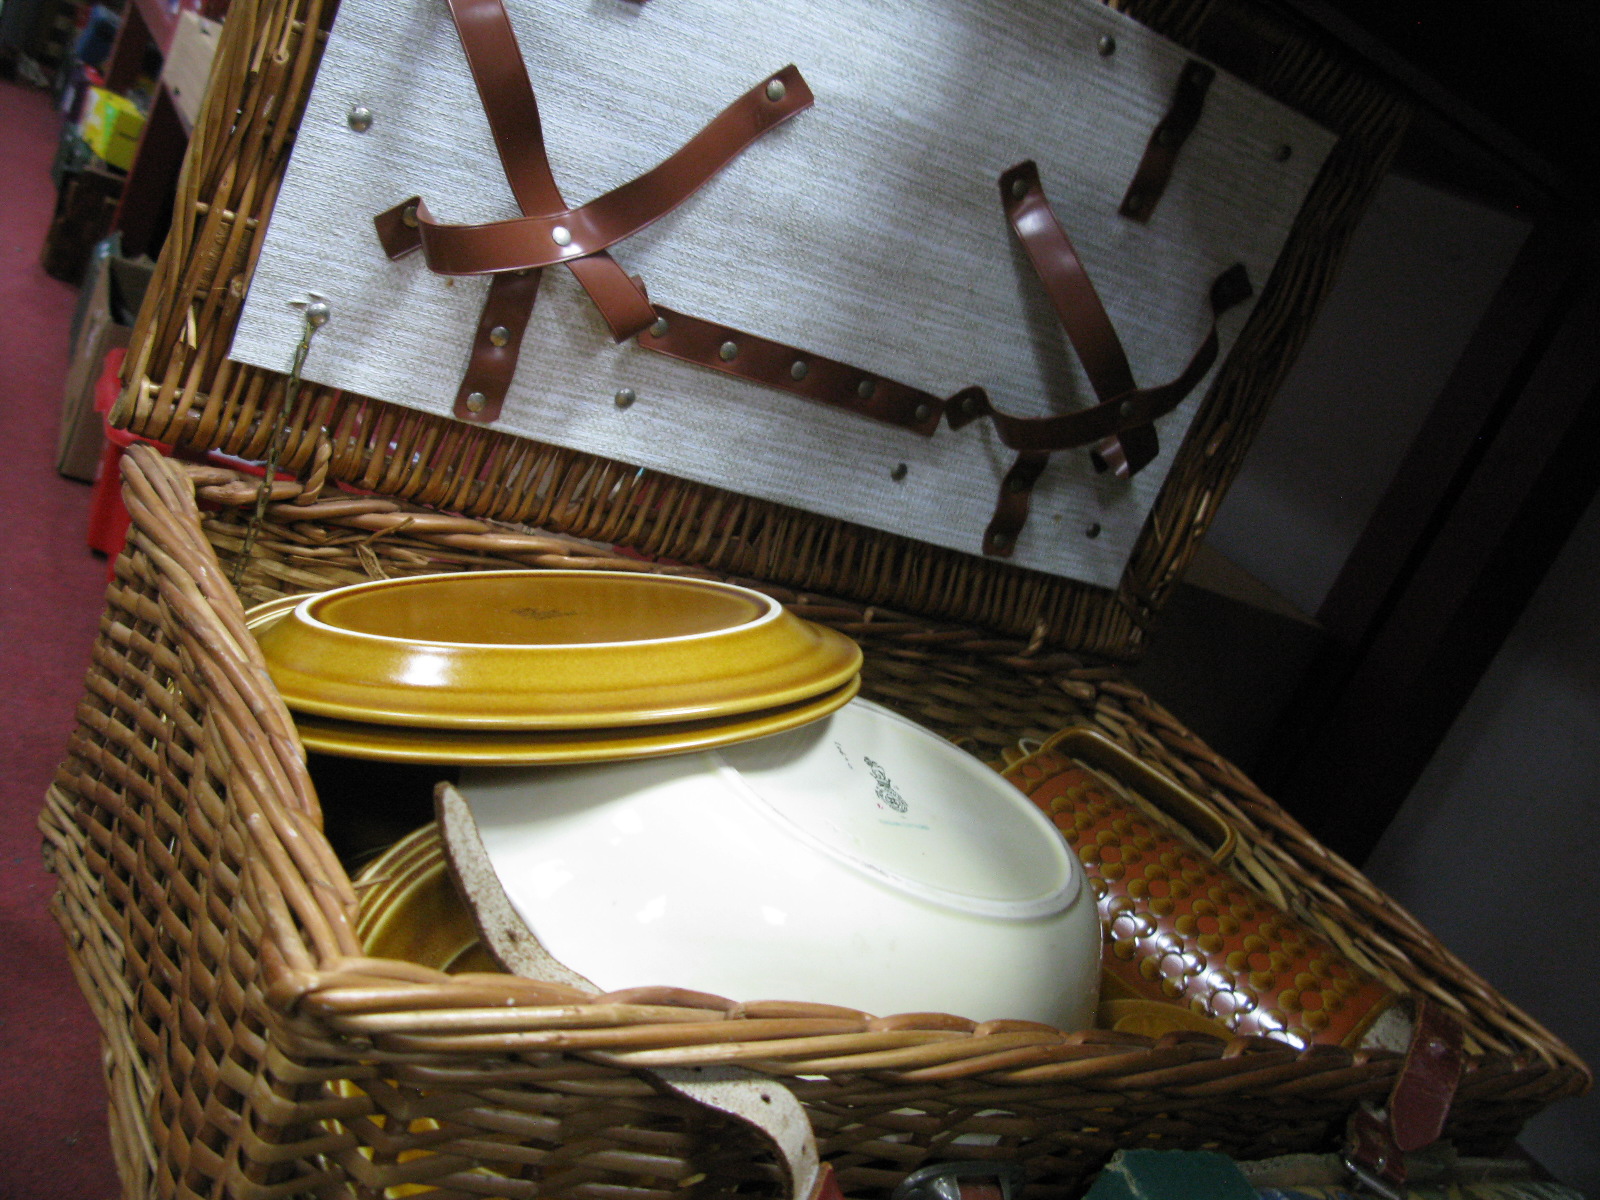 Doulton 'Saffron' Coffee Ware, Doulton English Cottages bowl, wicker hamper